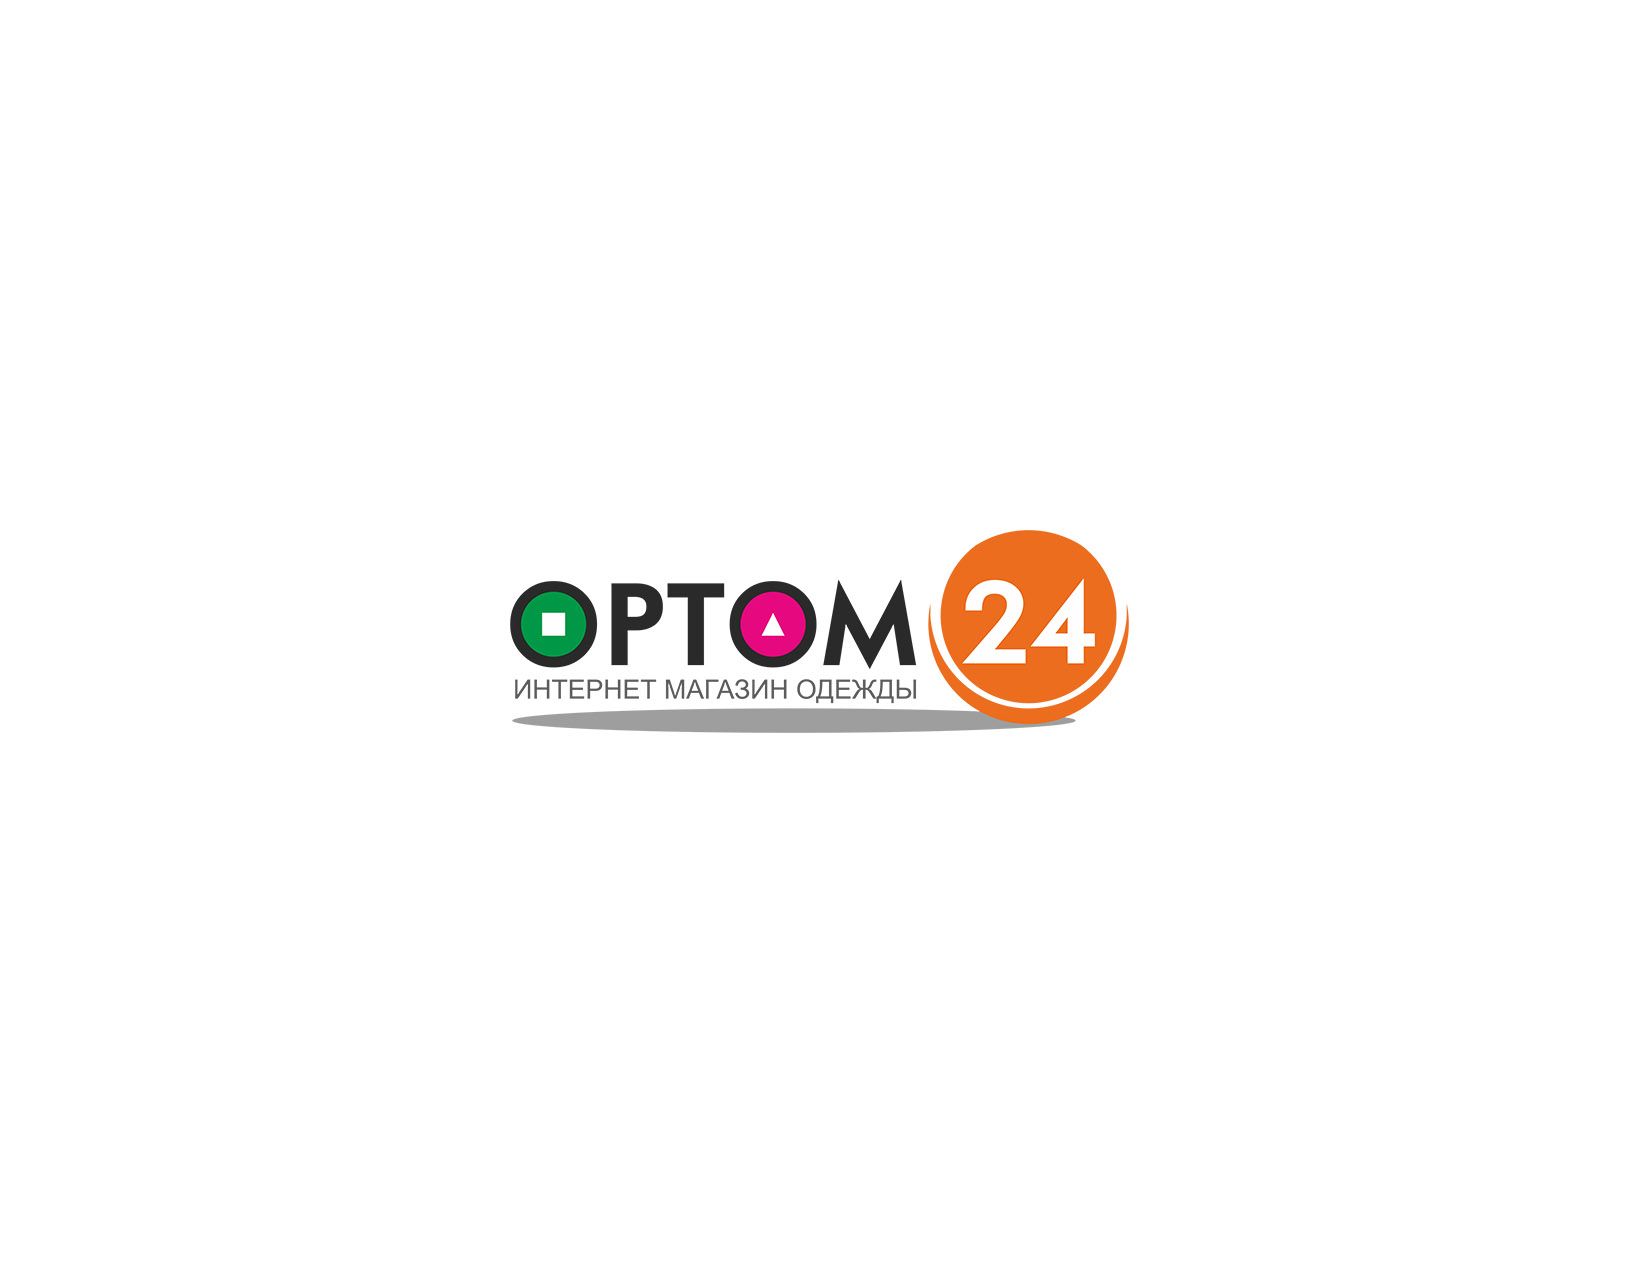 Логотип и фирменный стиль для сайта Optom24.ru - дизайнер cloudlixo